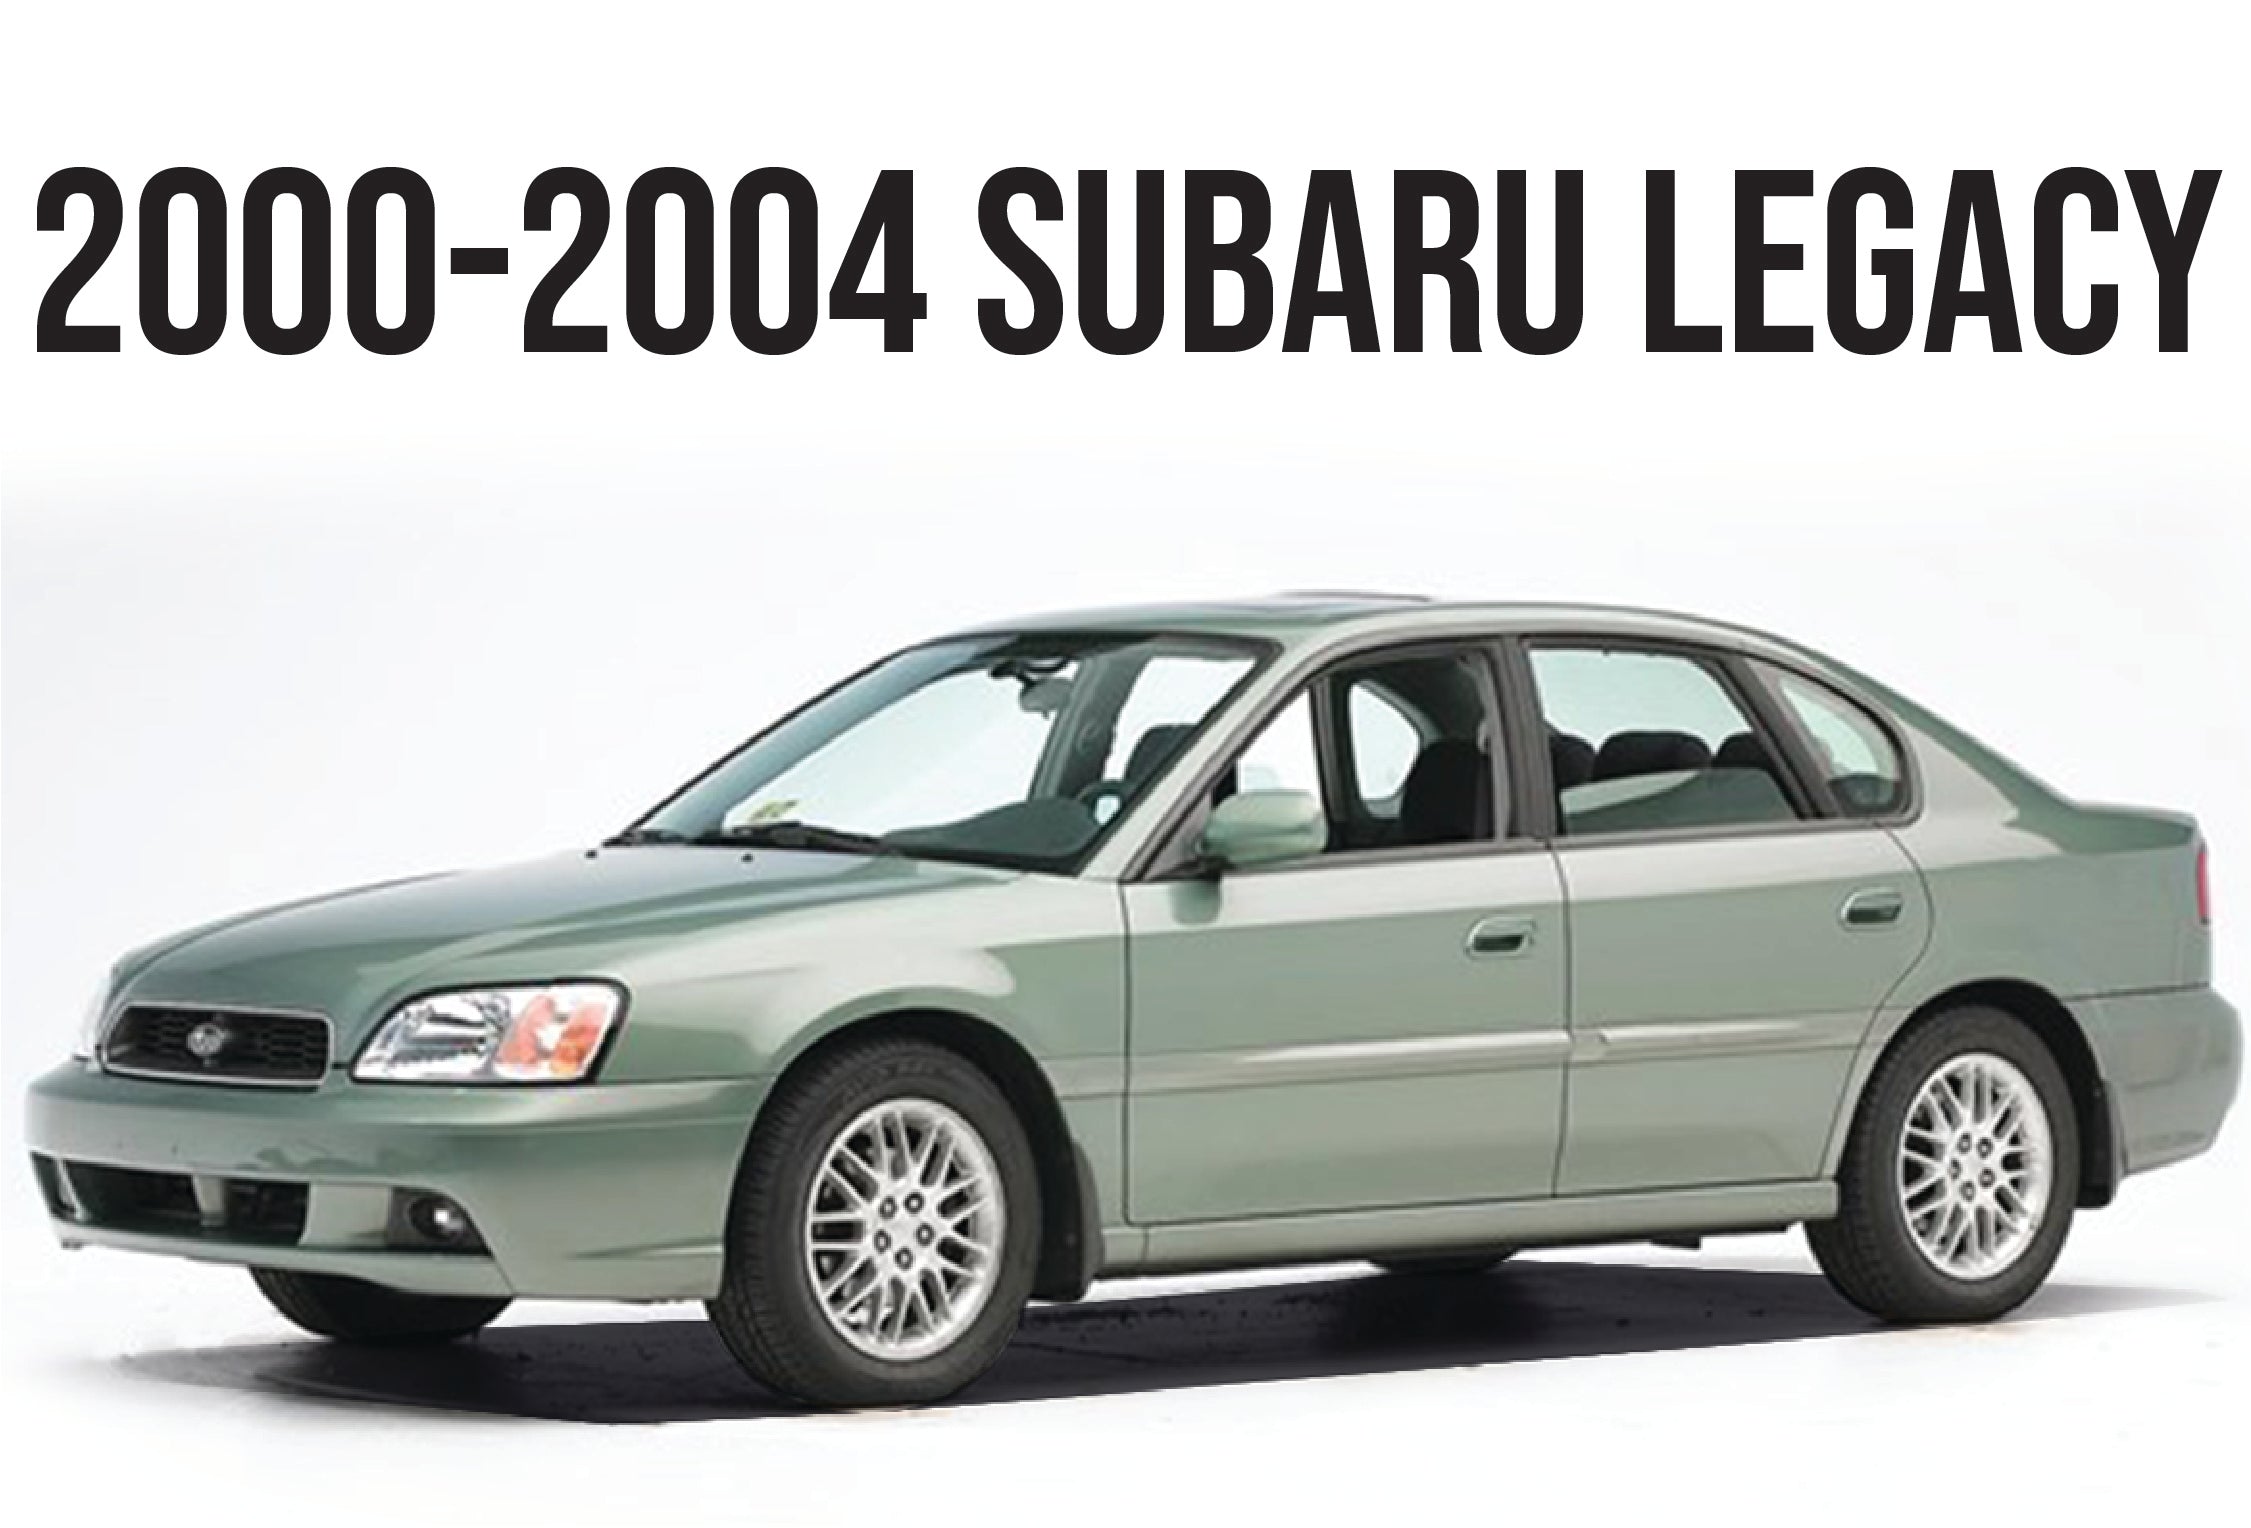 2000-2004 SUBARU LEGACY - Unique Style Racing